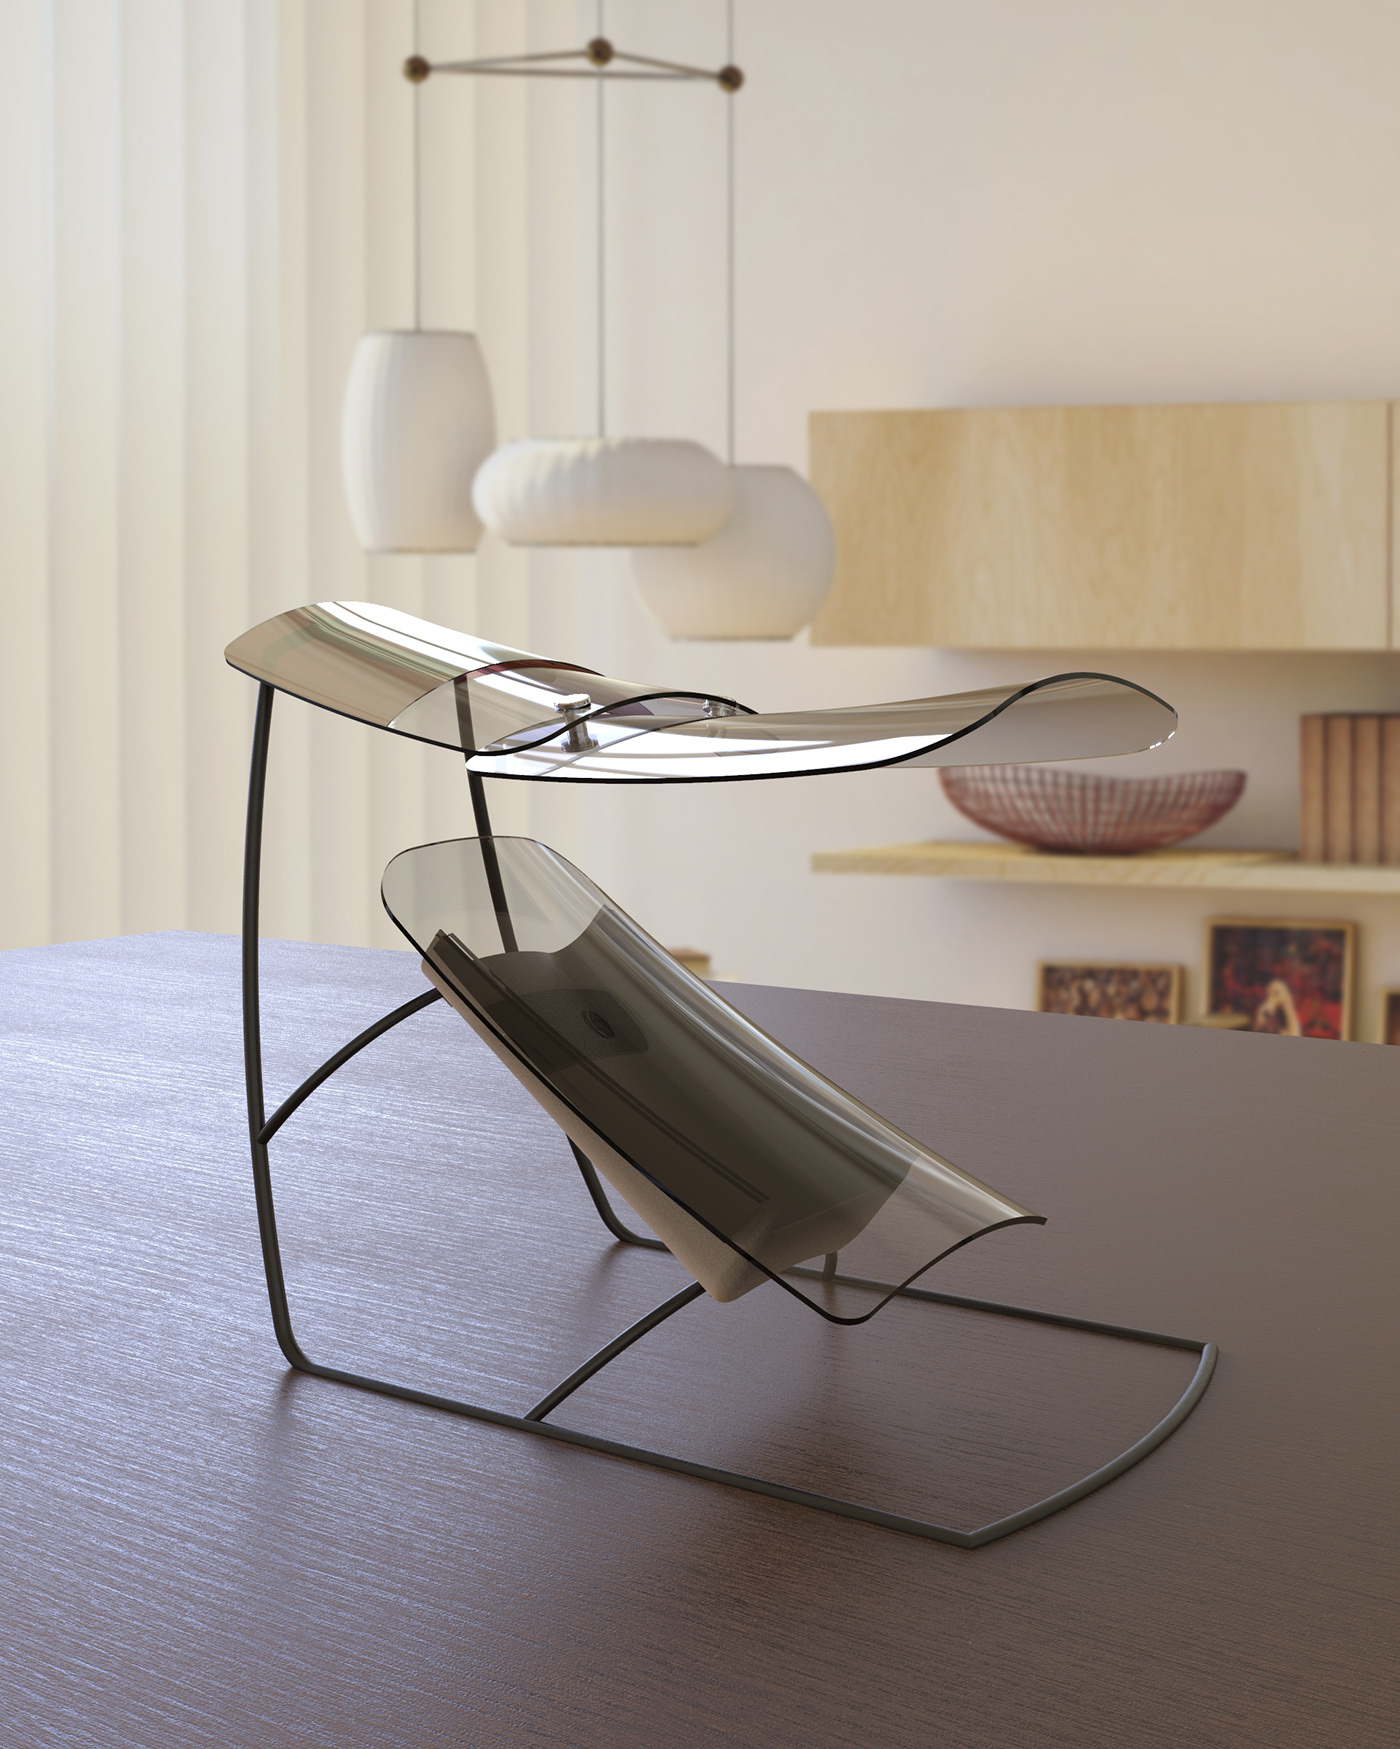 design industrial design  Render 3D interior design  modern product design  3d modeling furniture light